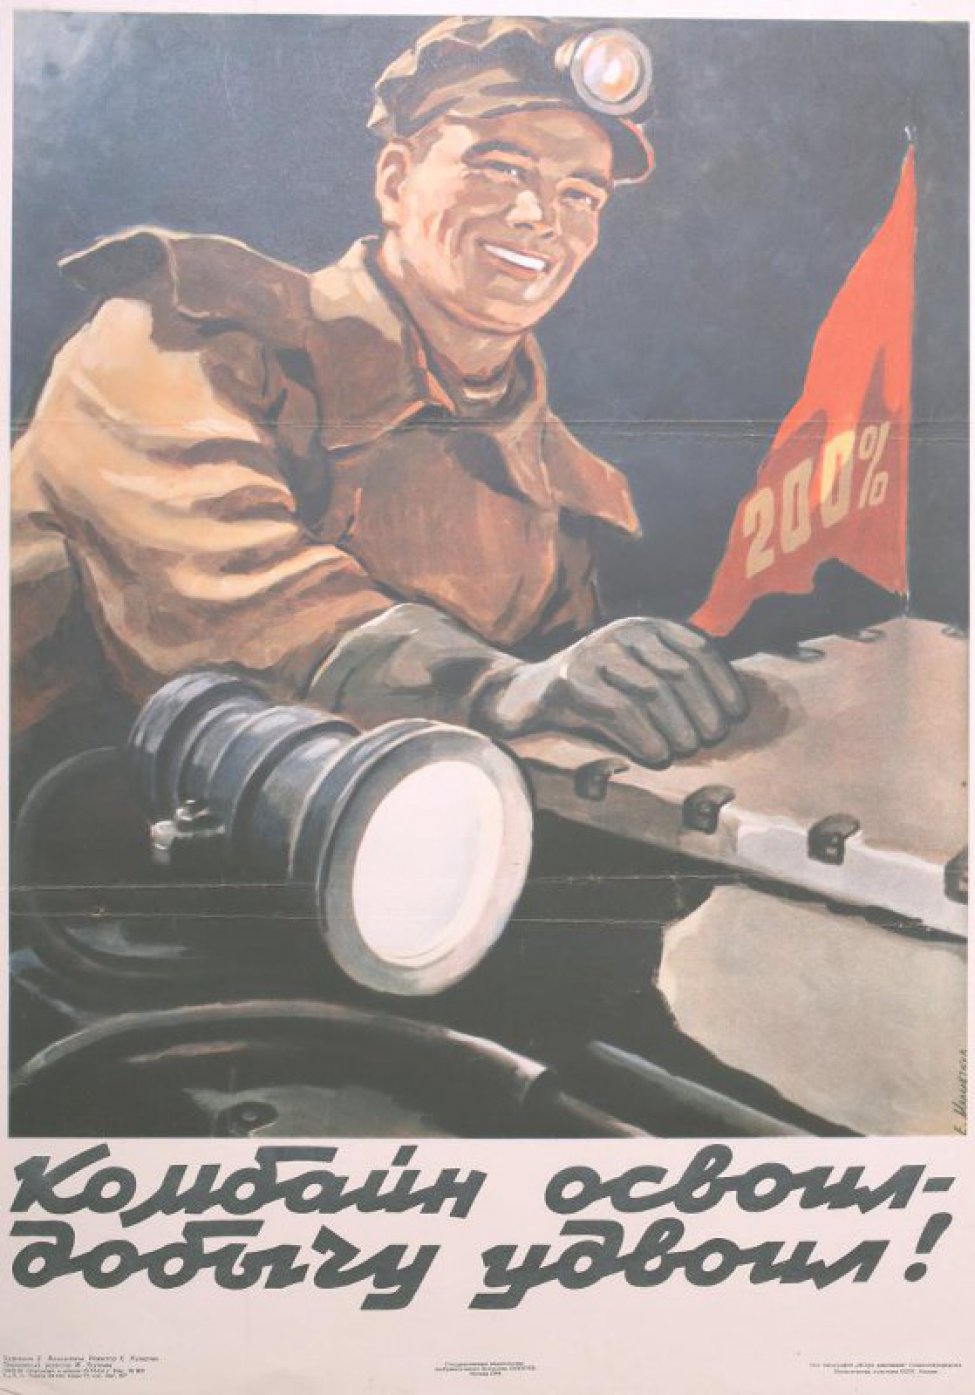 Изображен молодой улыбающийся рабочий,который сидит за штурвалом комбайна. Он в плаще, в перчатках на лбу-лампа. Слева от него красный флажок с надписью:"200%". Под изображением текст.